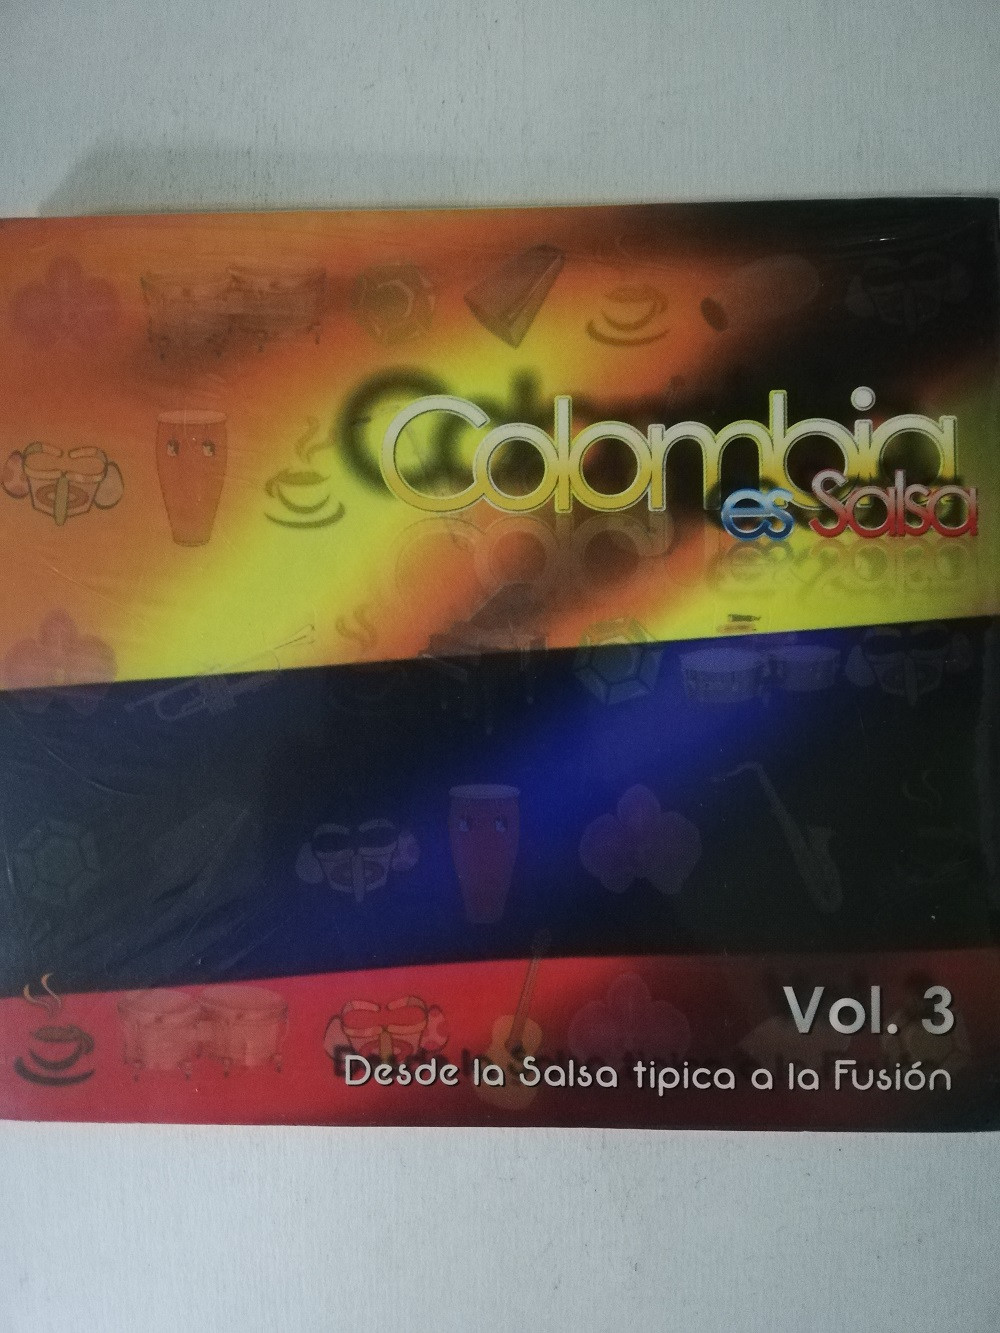 Imagen CD COLOMBIA ES SALSA - DESDE LA SALSA TIPICA A LA FUSIÓN VOL. 3